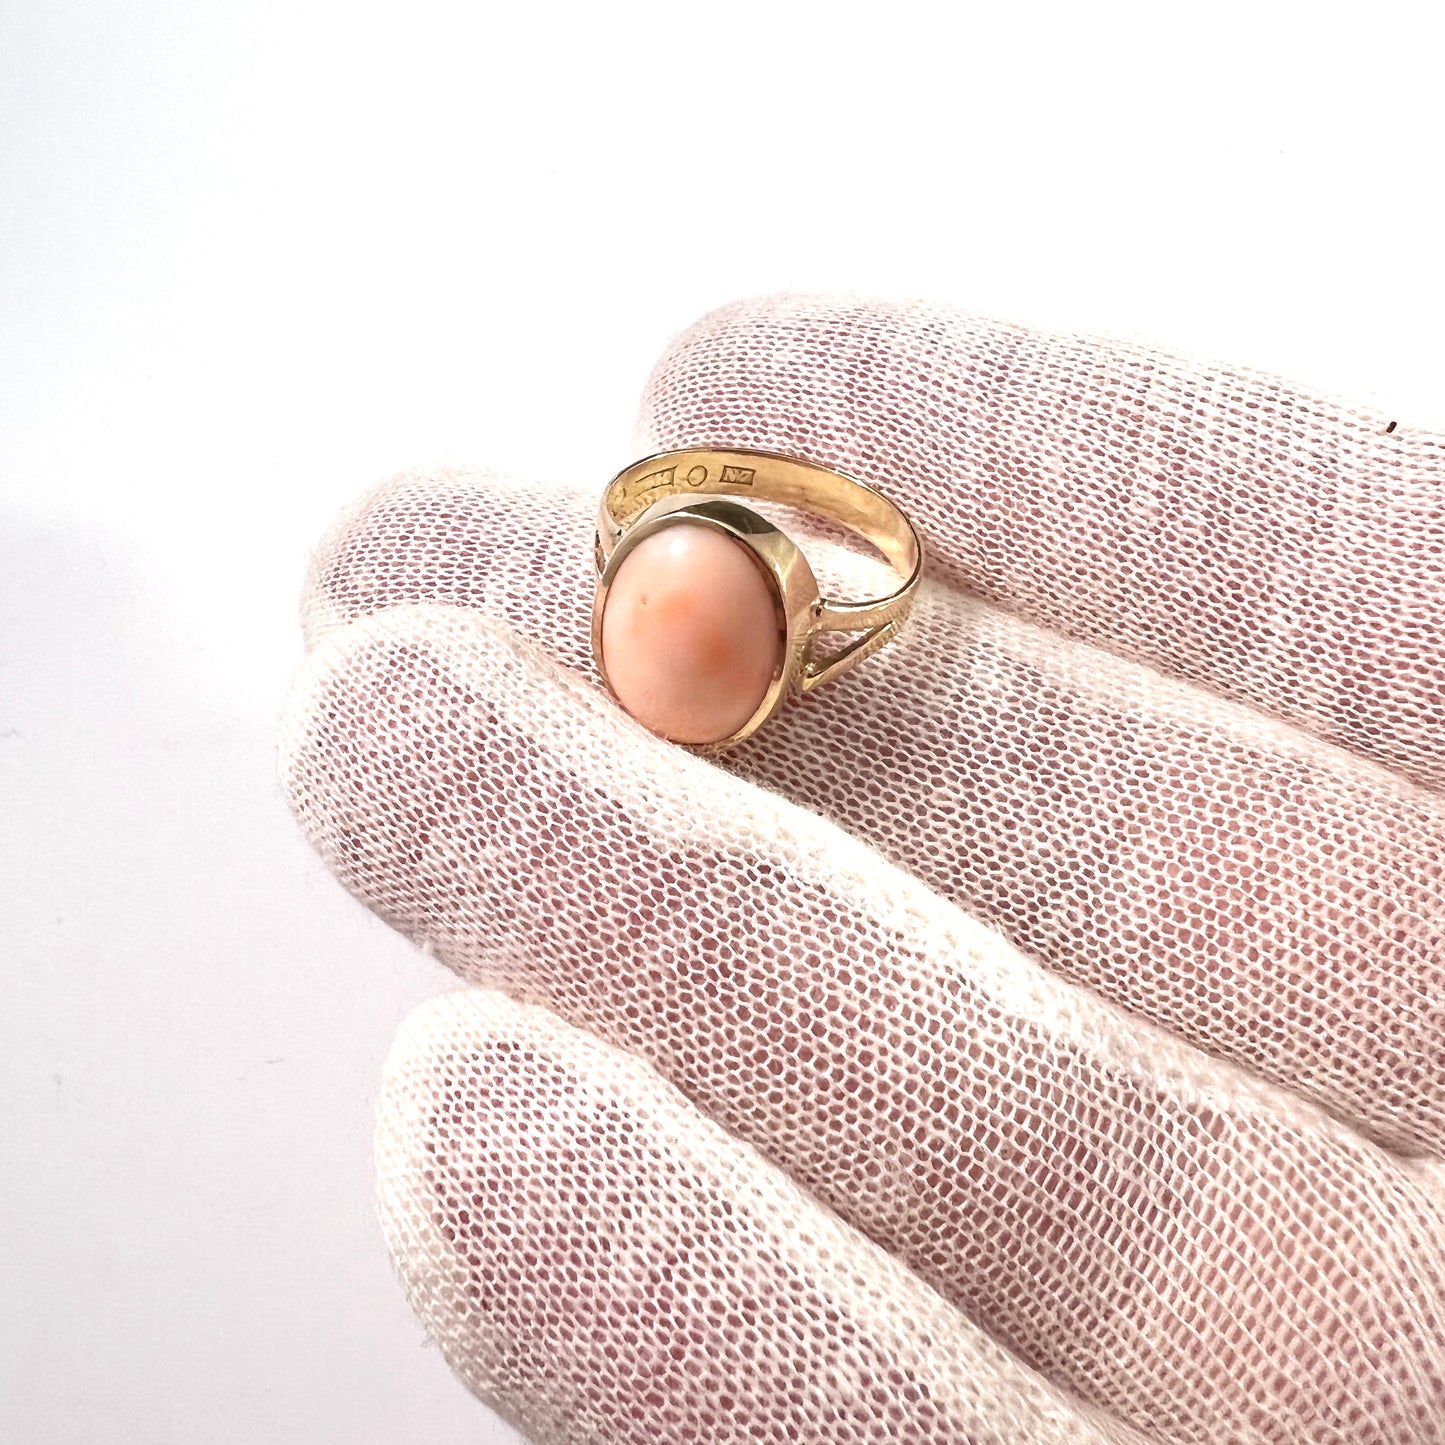 Antique/Vintage 18k Gold Coral Ring. Shank year 1915. Face 1950s. Sweden.